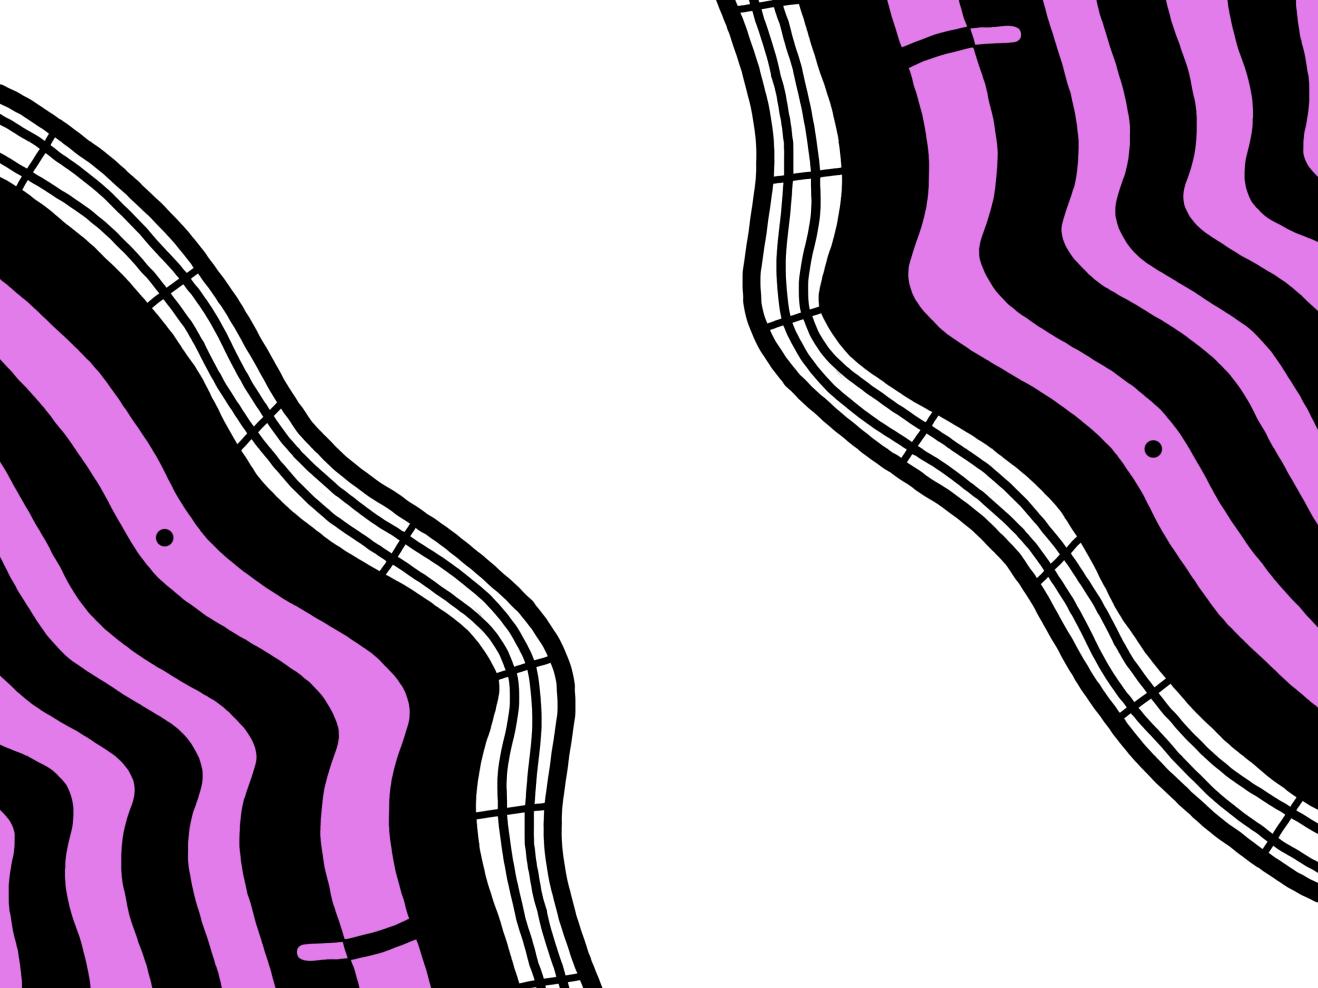 Abstrakte Illustration des HfMDK-Foyers in pink und schwarz, das Motiv für den Podcast FOYERFUNK.